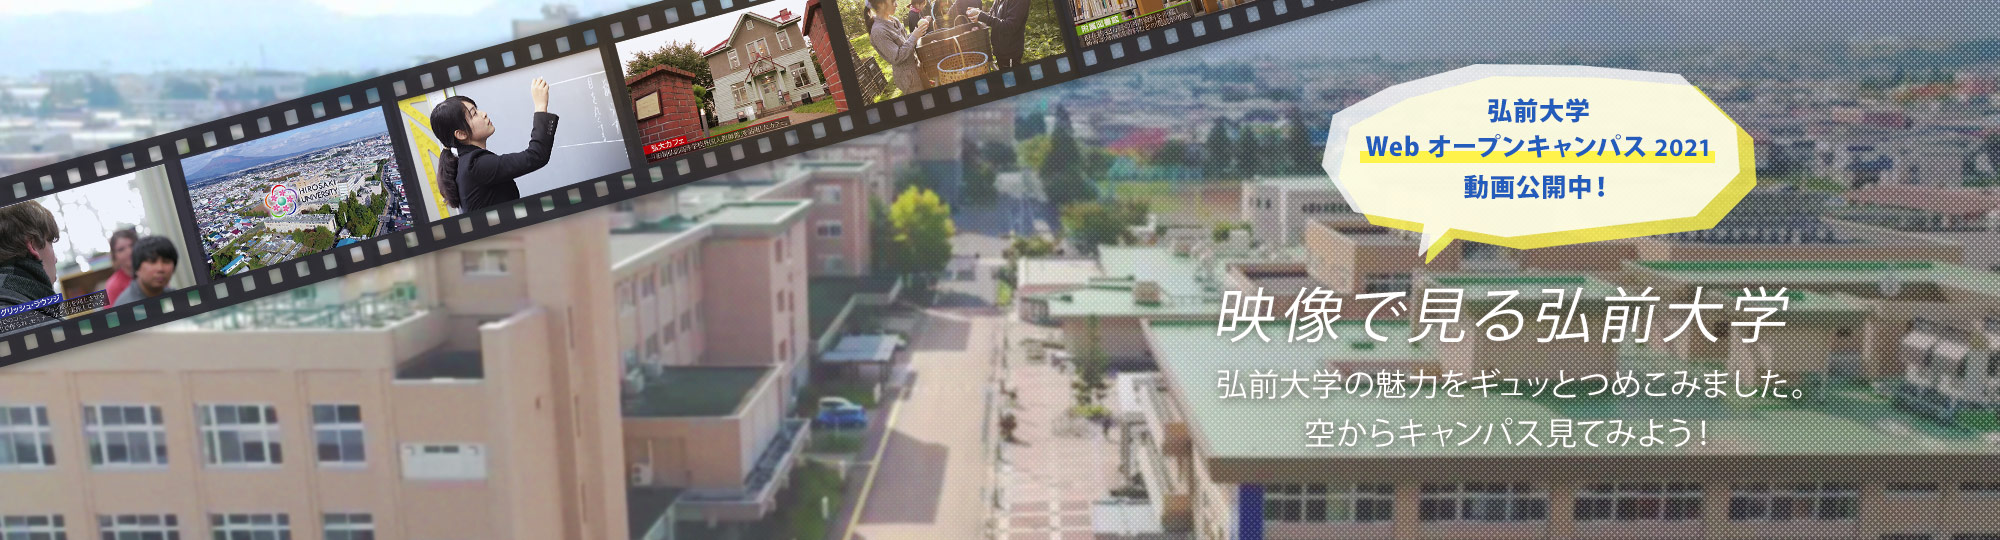 映像で見る弘前大学